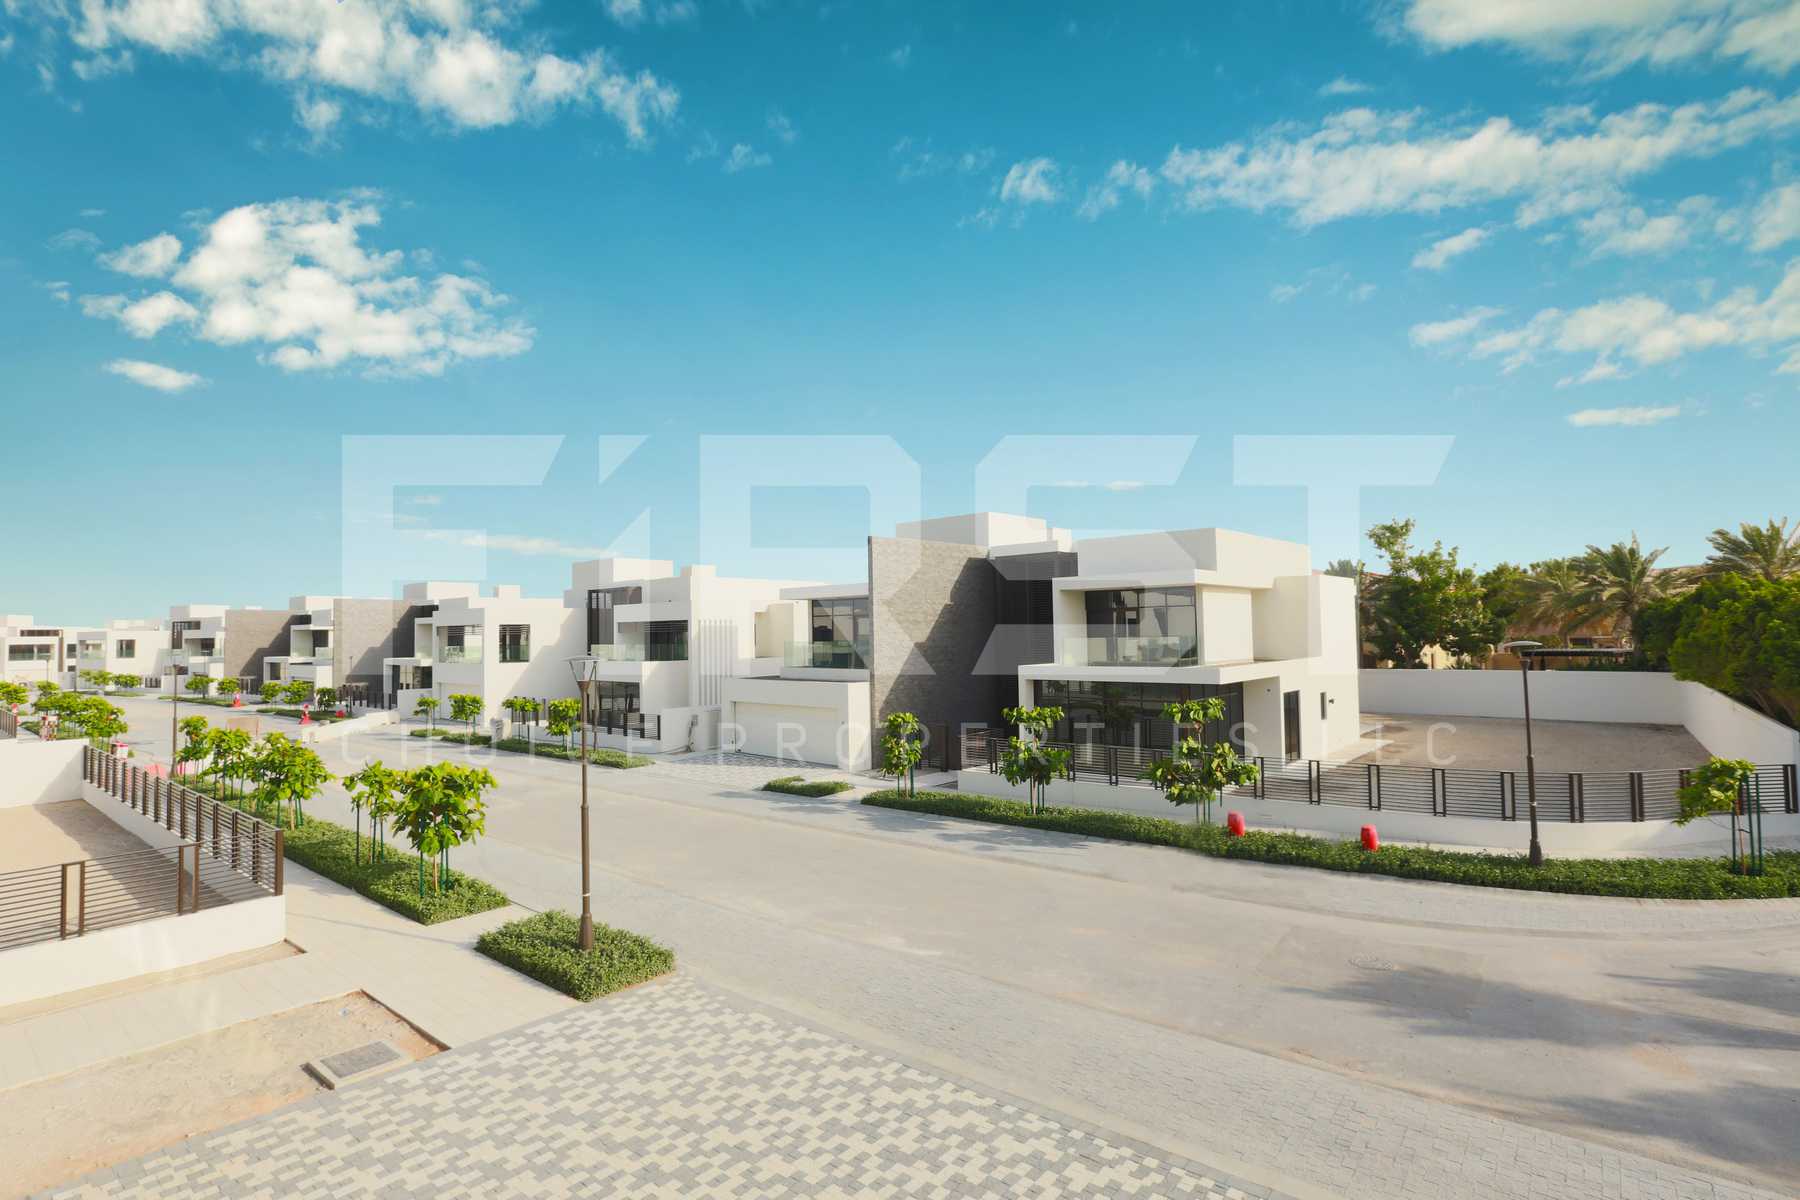 External Photo of 5 Bedroom Villa in Jawaher Saadiyat Saadiyat Island Abu Dhabi UAE (8).jpg